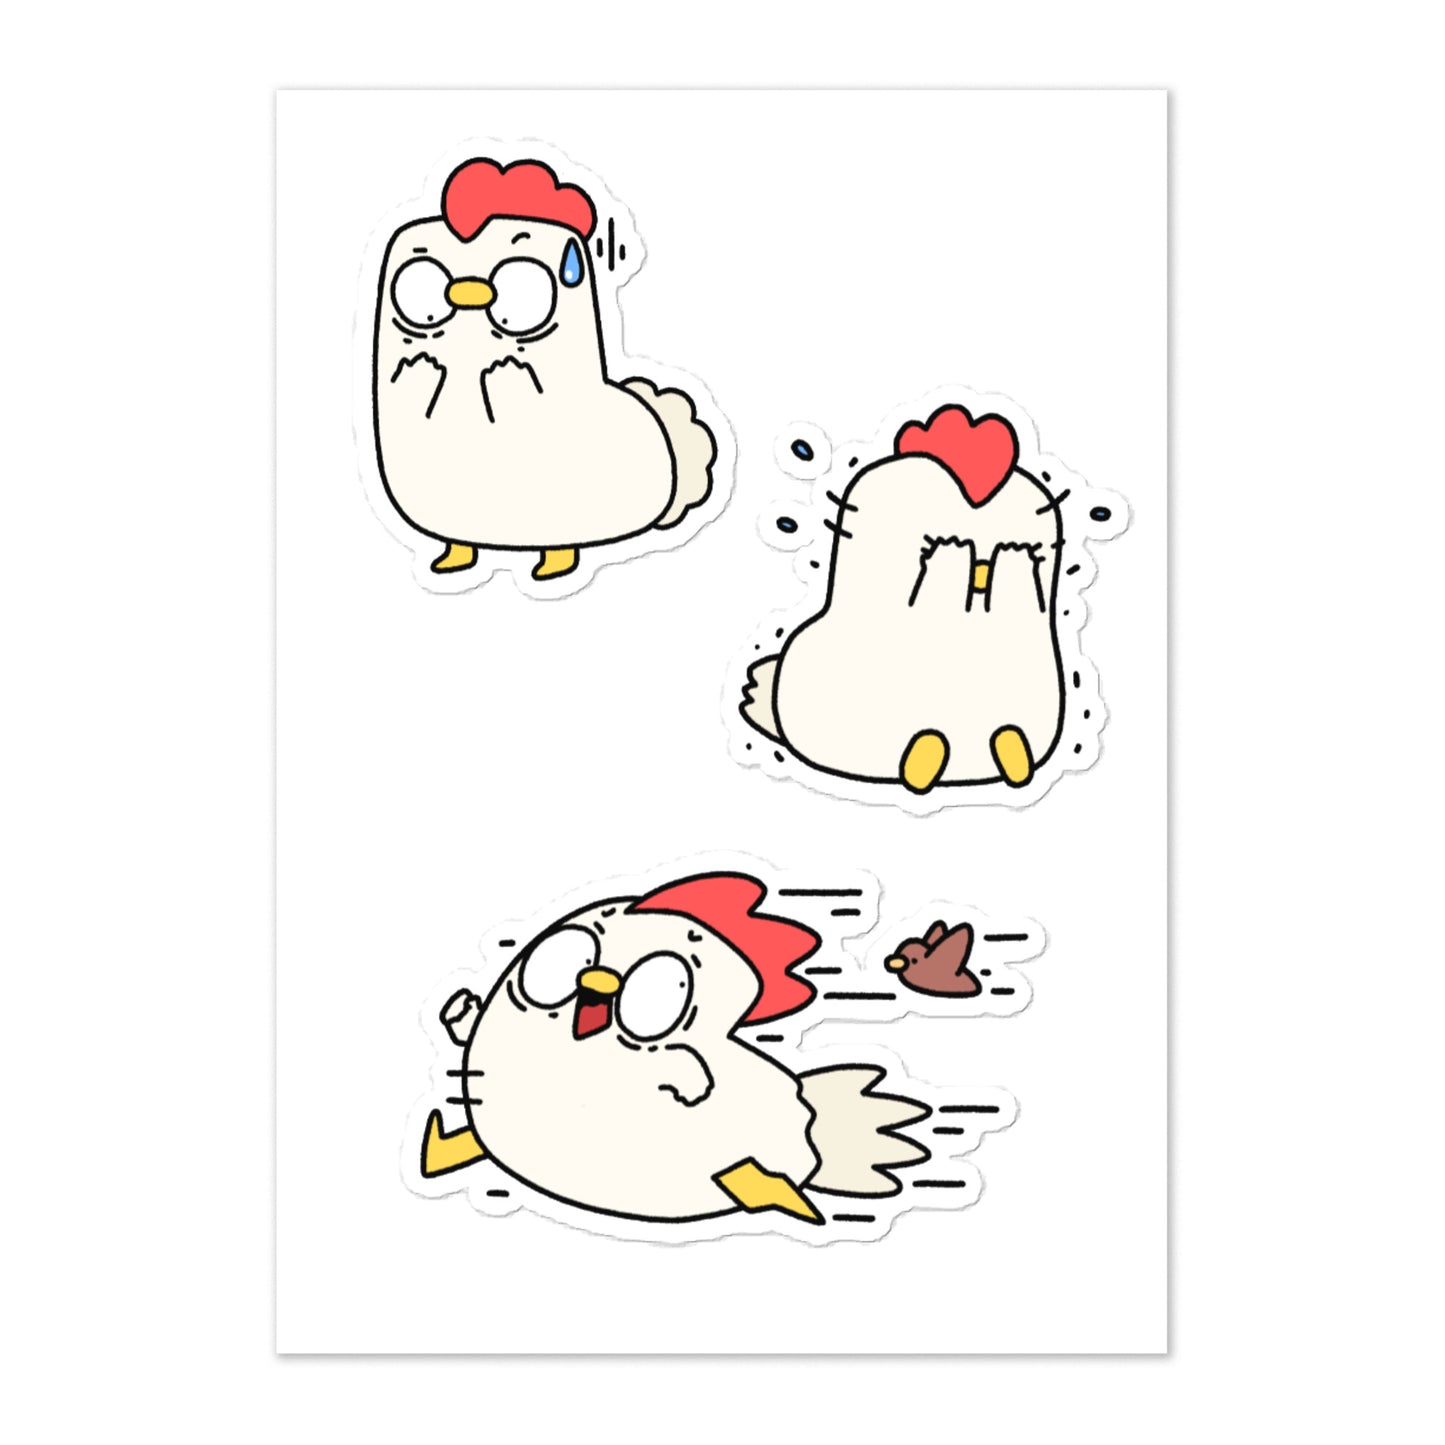 Chicken Sticker sheet